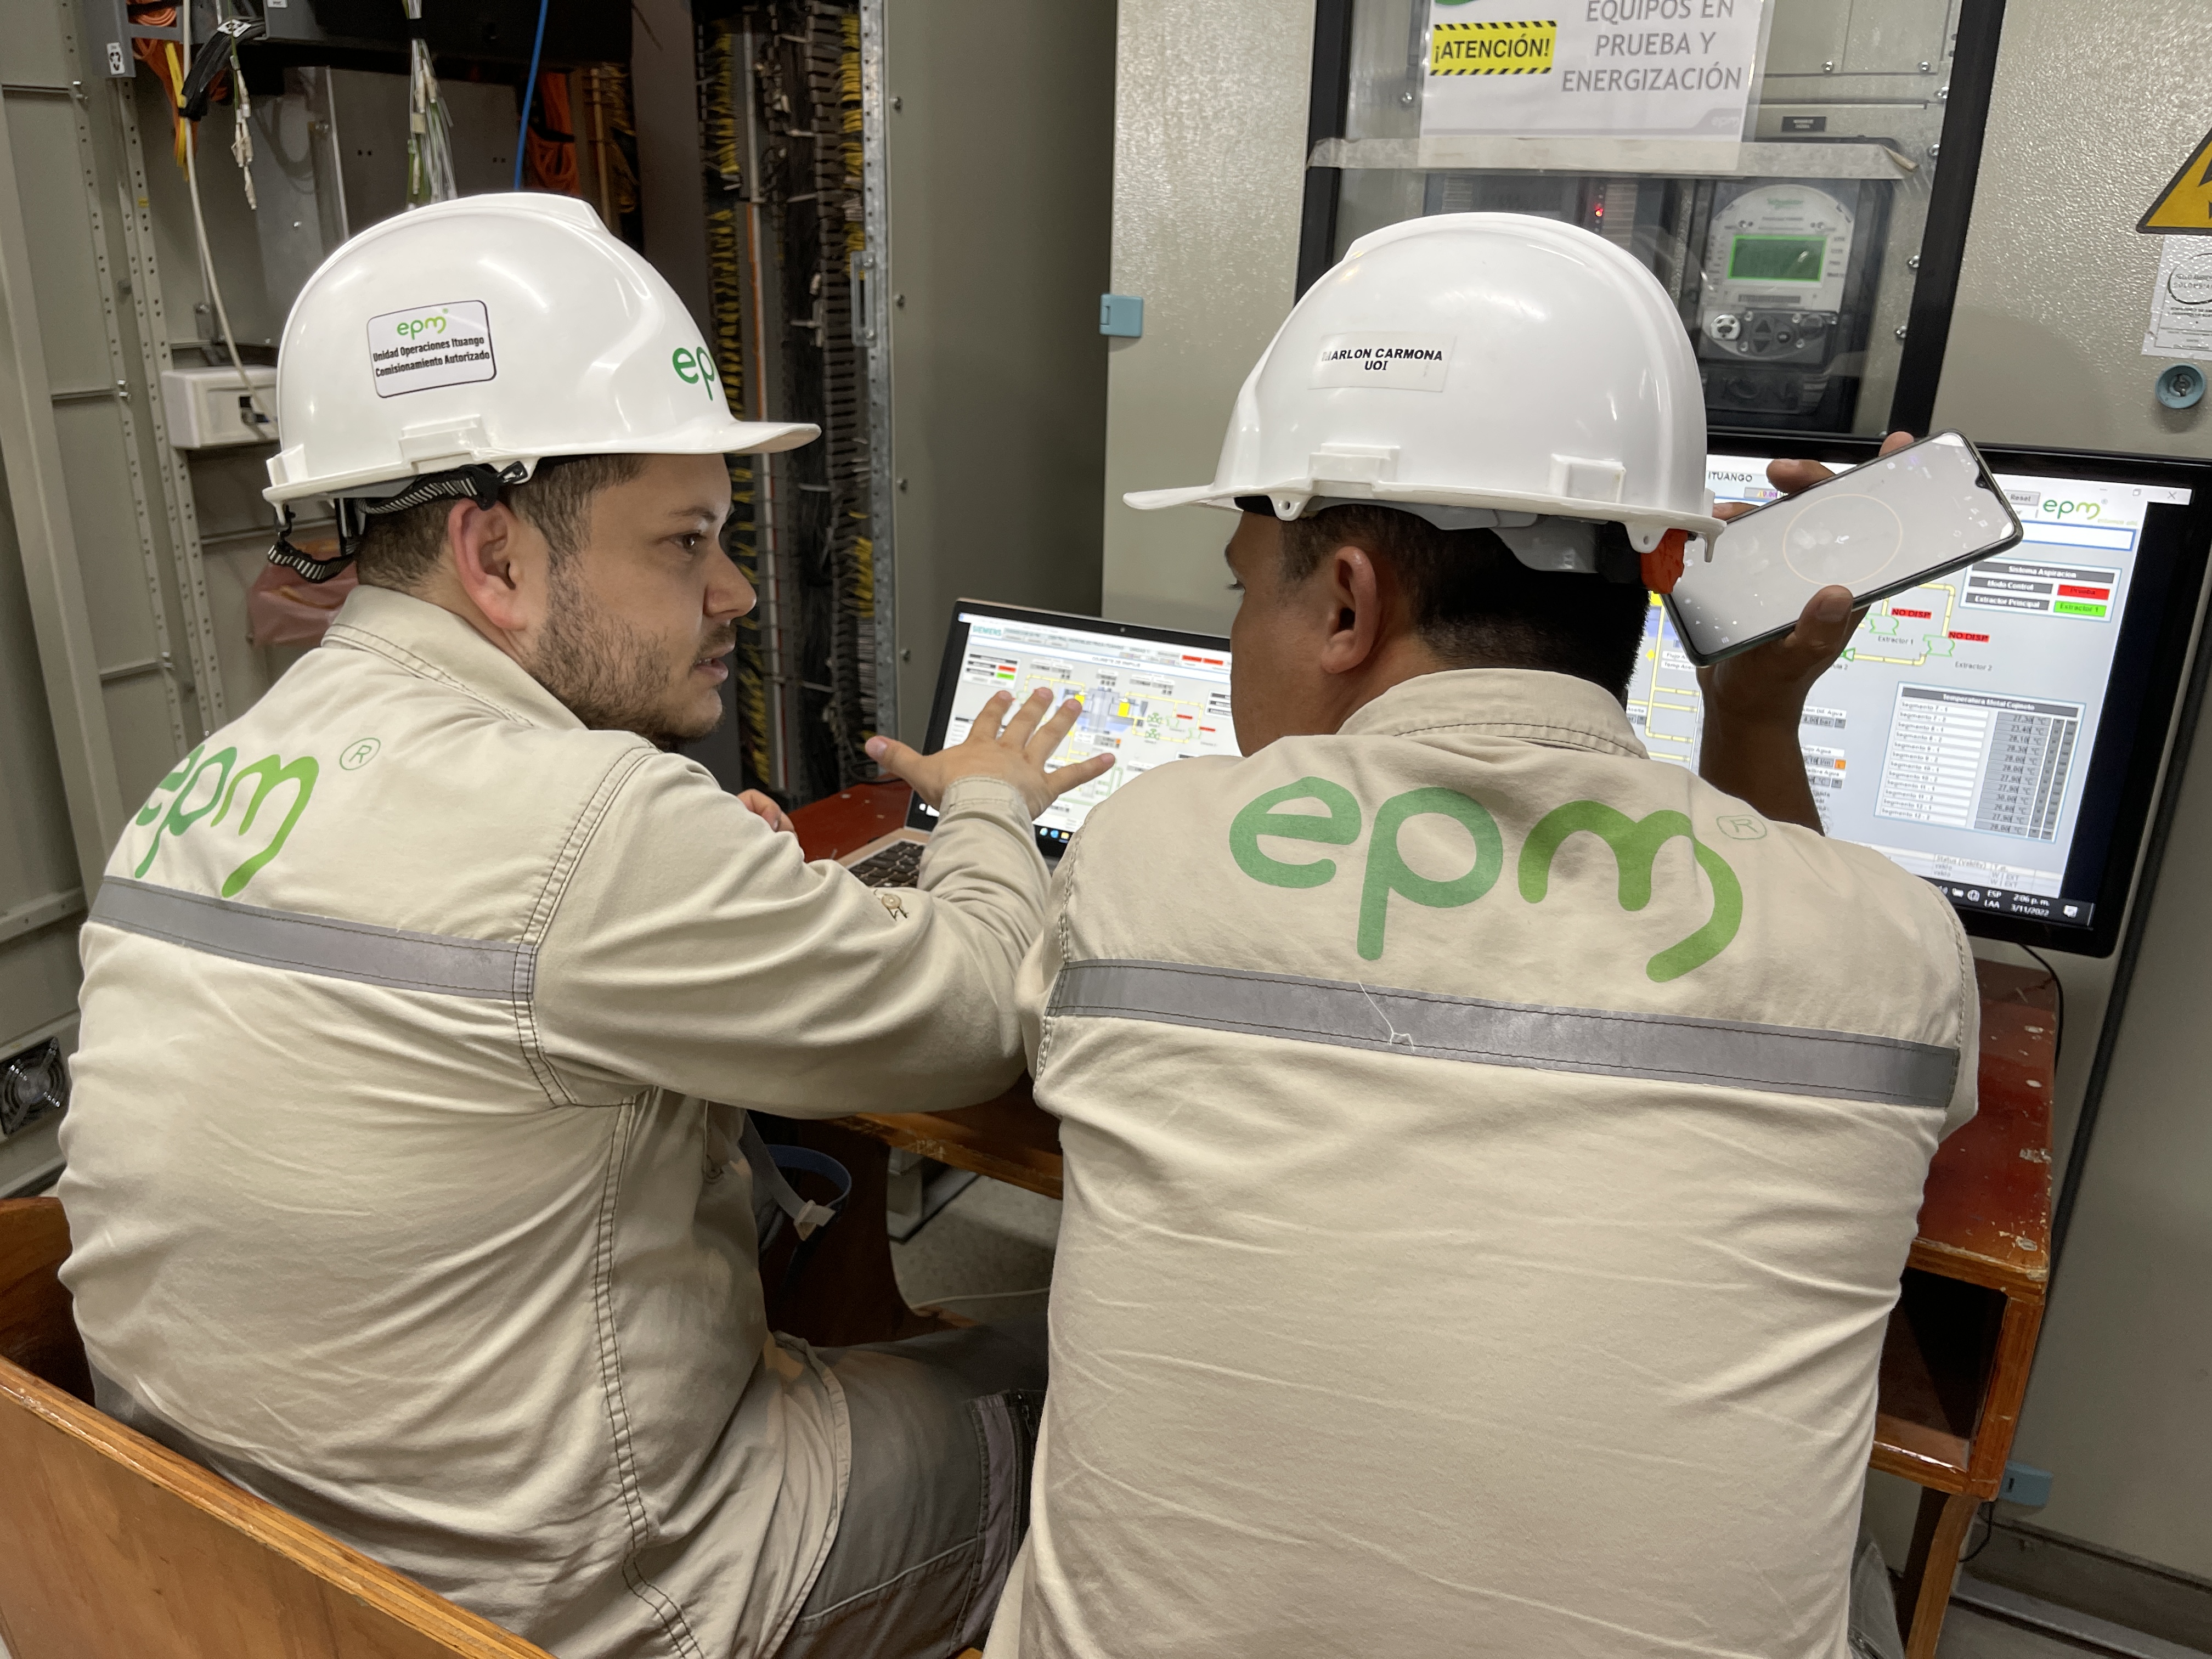 EPM contribuye a mitigar la coyuntura de las tarifas de energía actuales